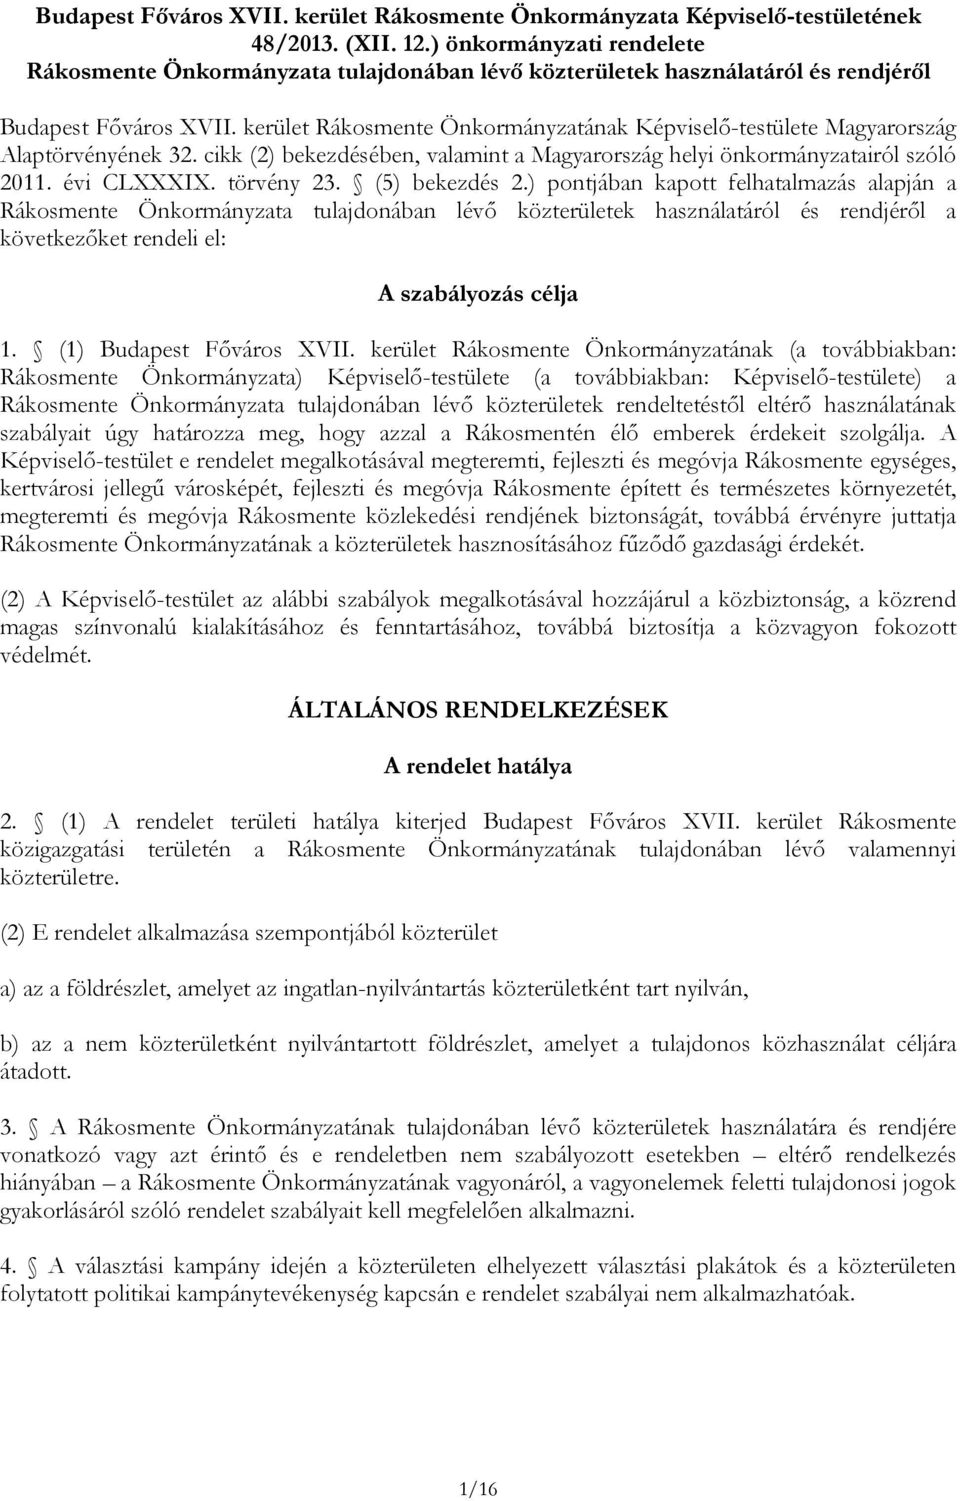 kerület Rákosmente Önkormányzatának Képviselő-testülete Magyarország Alaptörvényének 32. cikk (2) bekezdésében, valamint a Magyarország helyi önkormányzatairól szóló 2011. évi CLXXXIX. törvény 23.